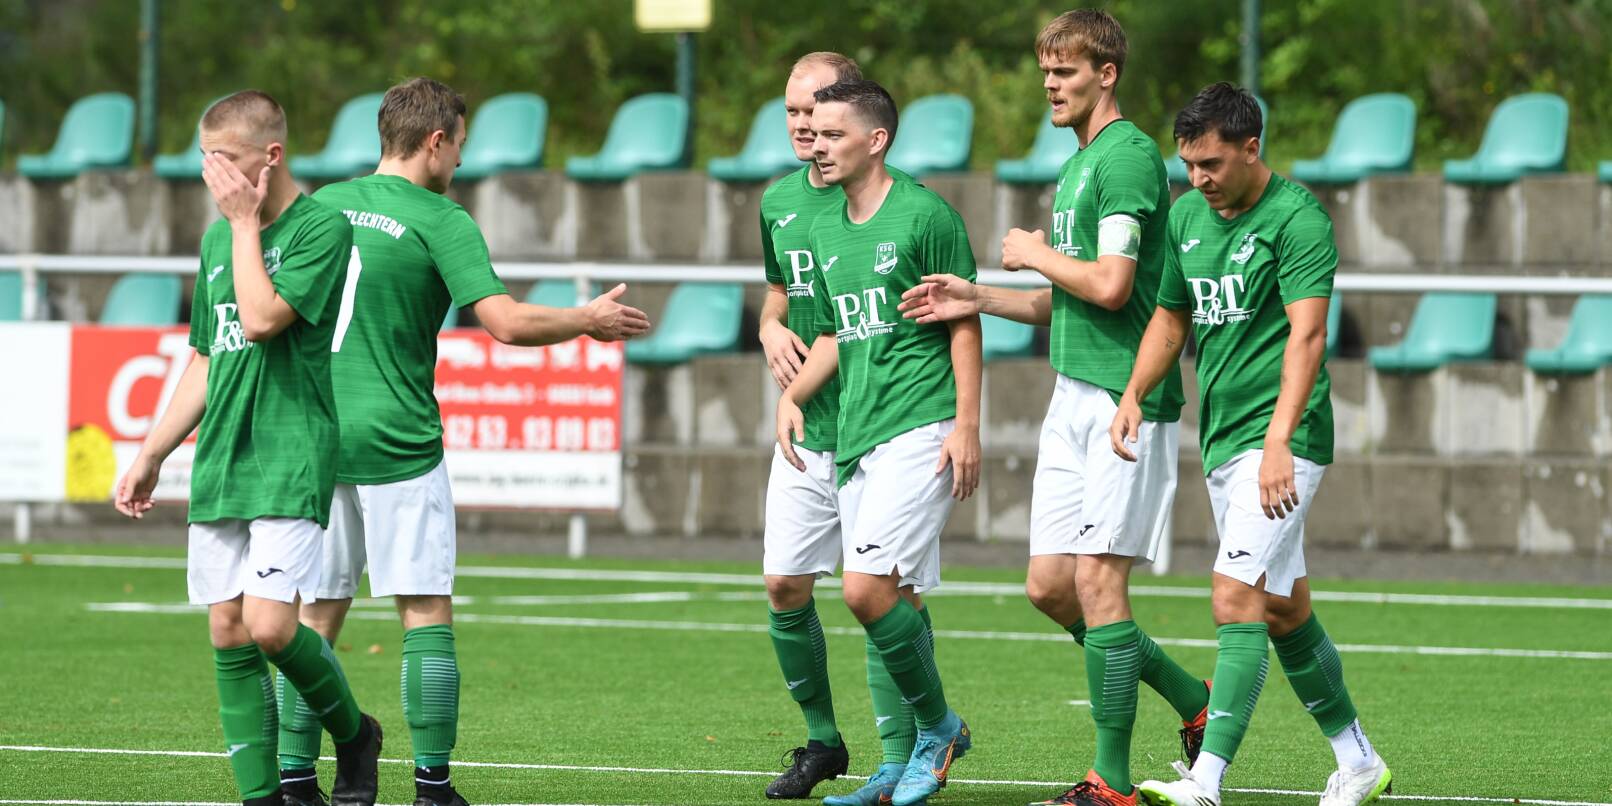 Jubel bei der KSG Mitlechtern nach dem 1:0. Mit 3:2 gelang gegen den FC Ober-Abtsteinach der erste Saisonsieg.    Bild: Thomas Rittelmann